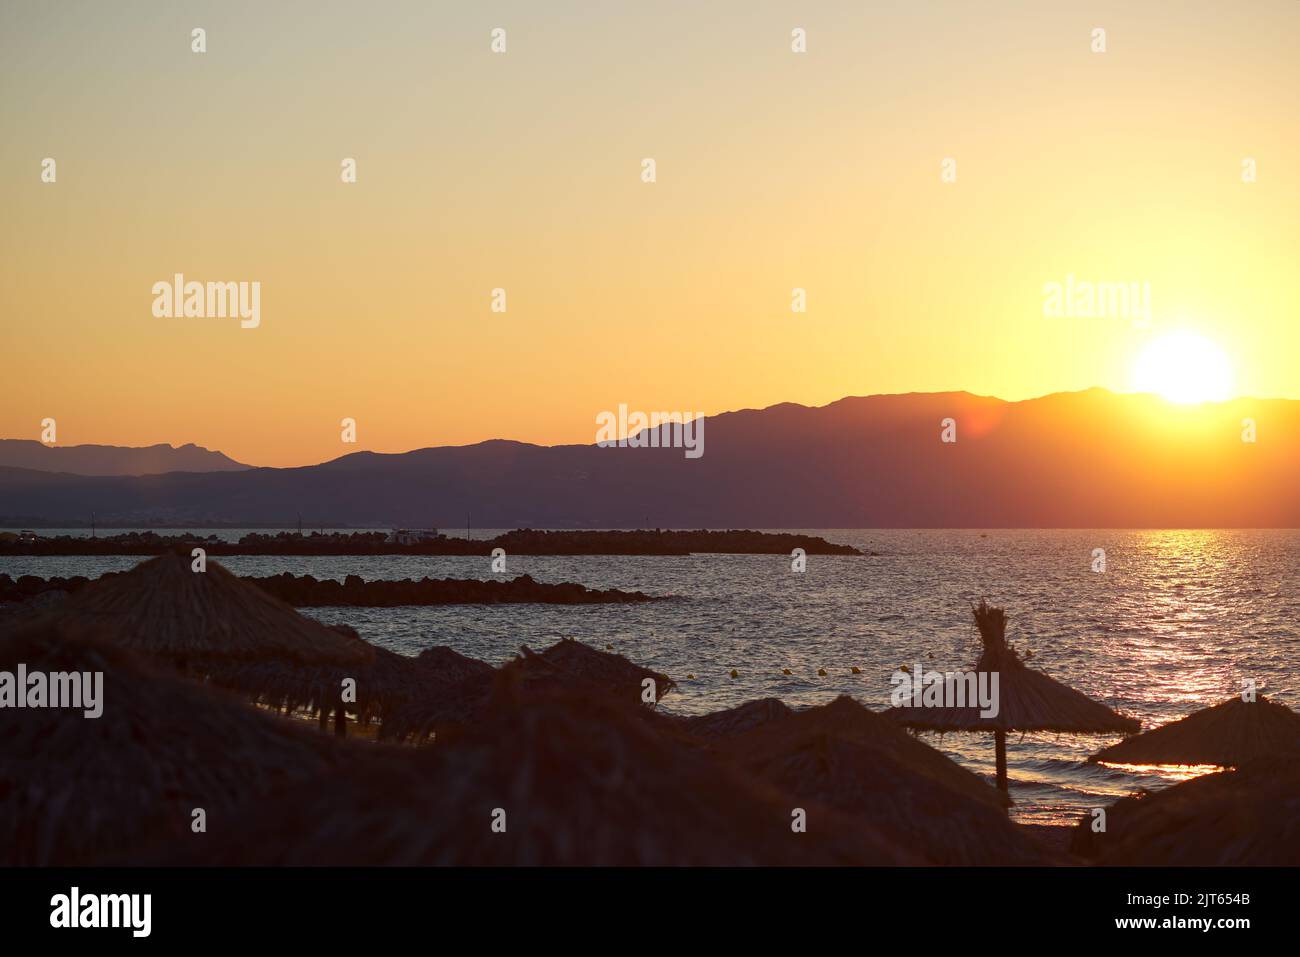 Sonnenschirme am Strand und am Meer bei Sonnenuntergang in Chania Kreta - Griechenland Stockfoto